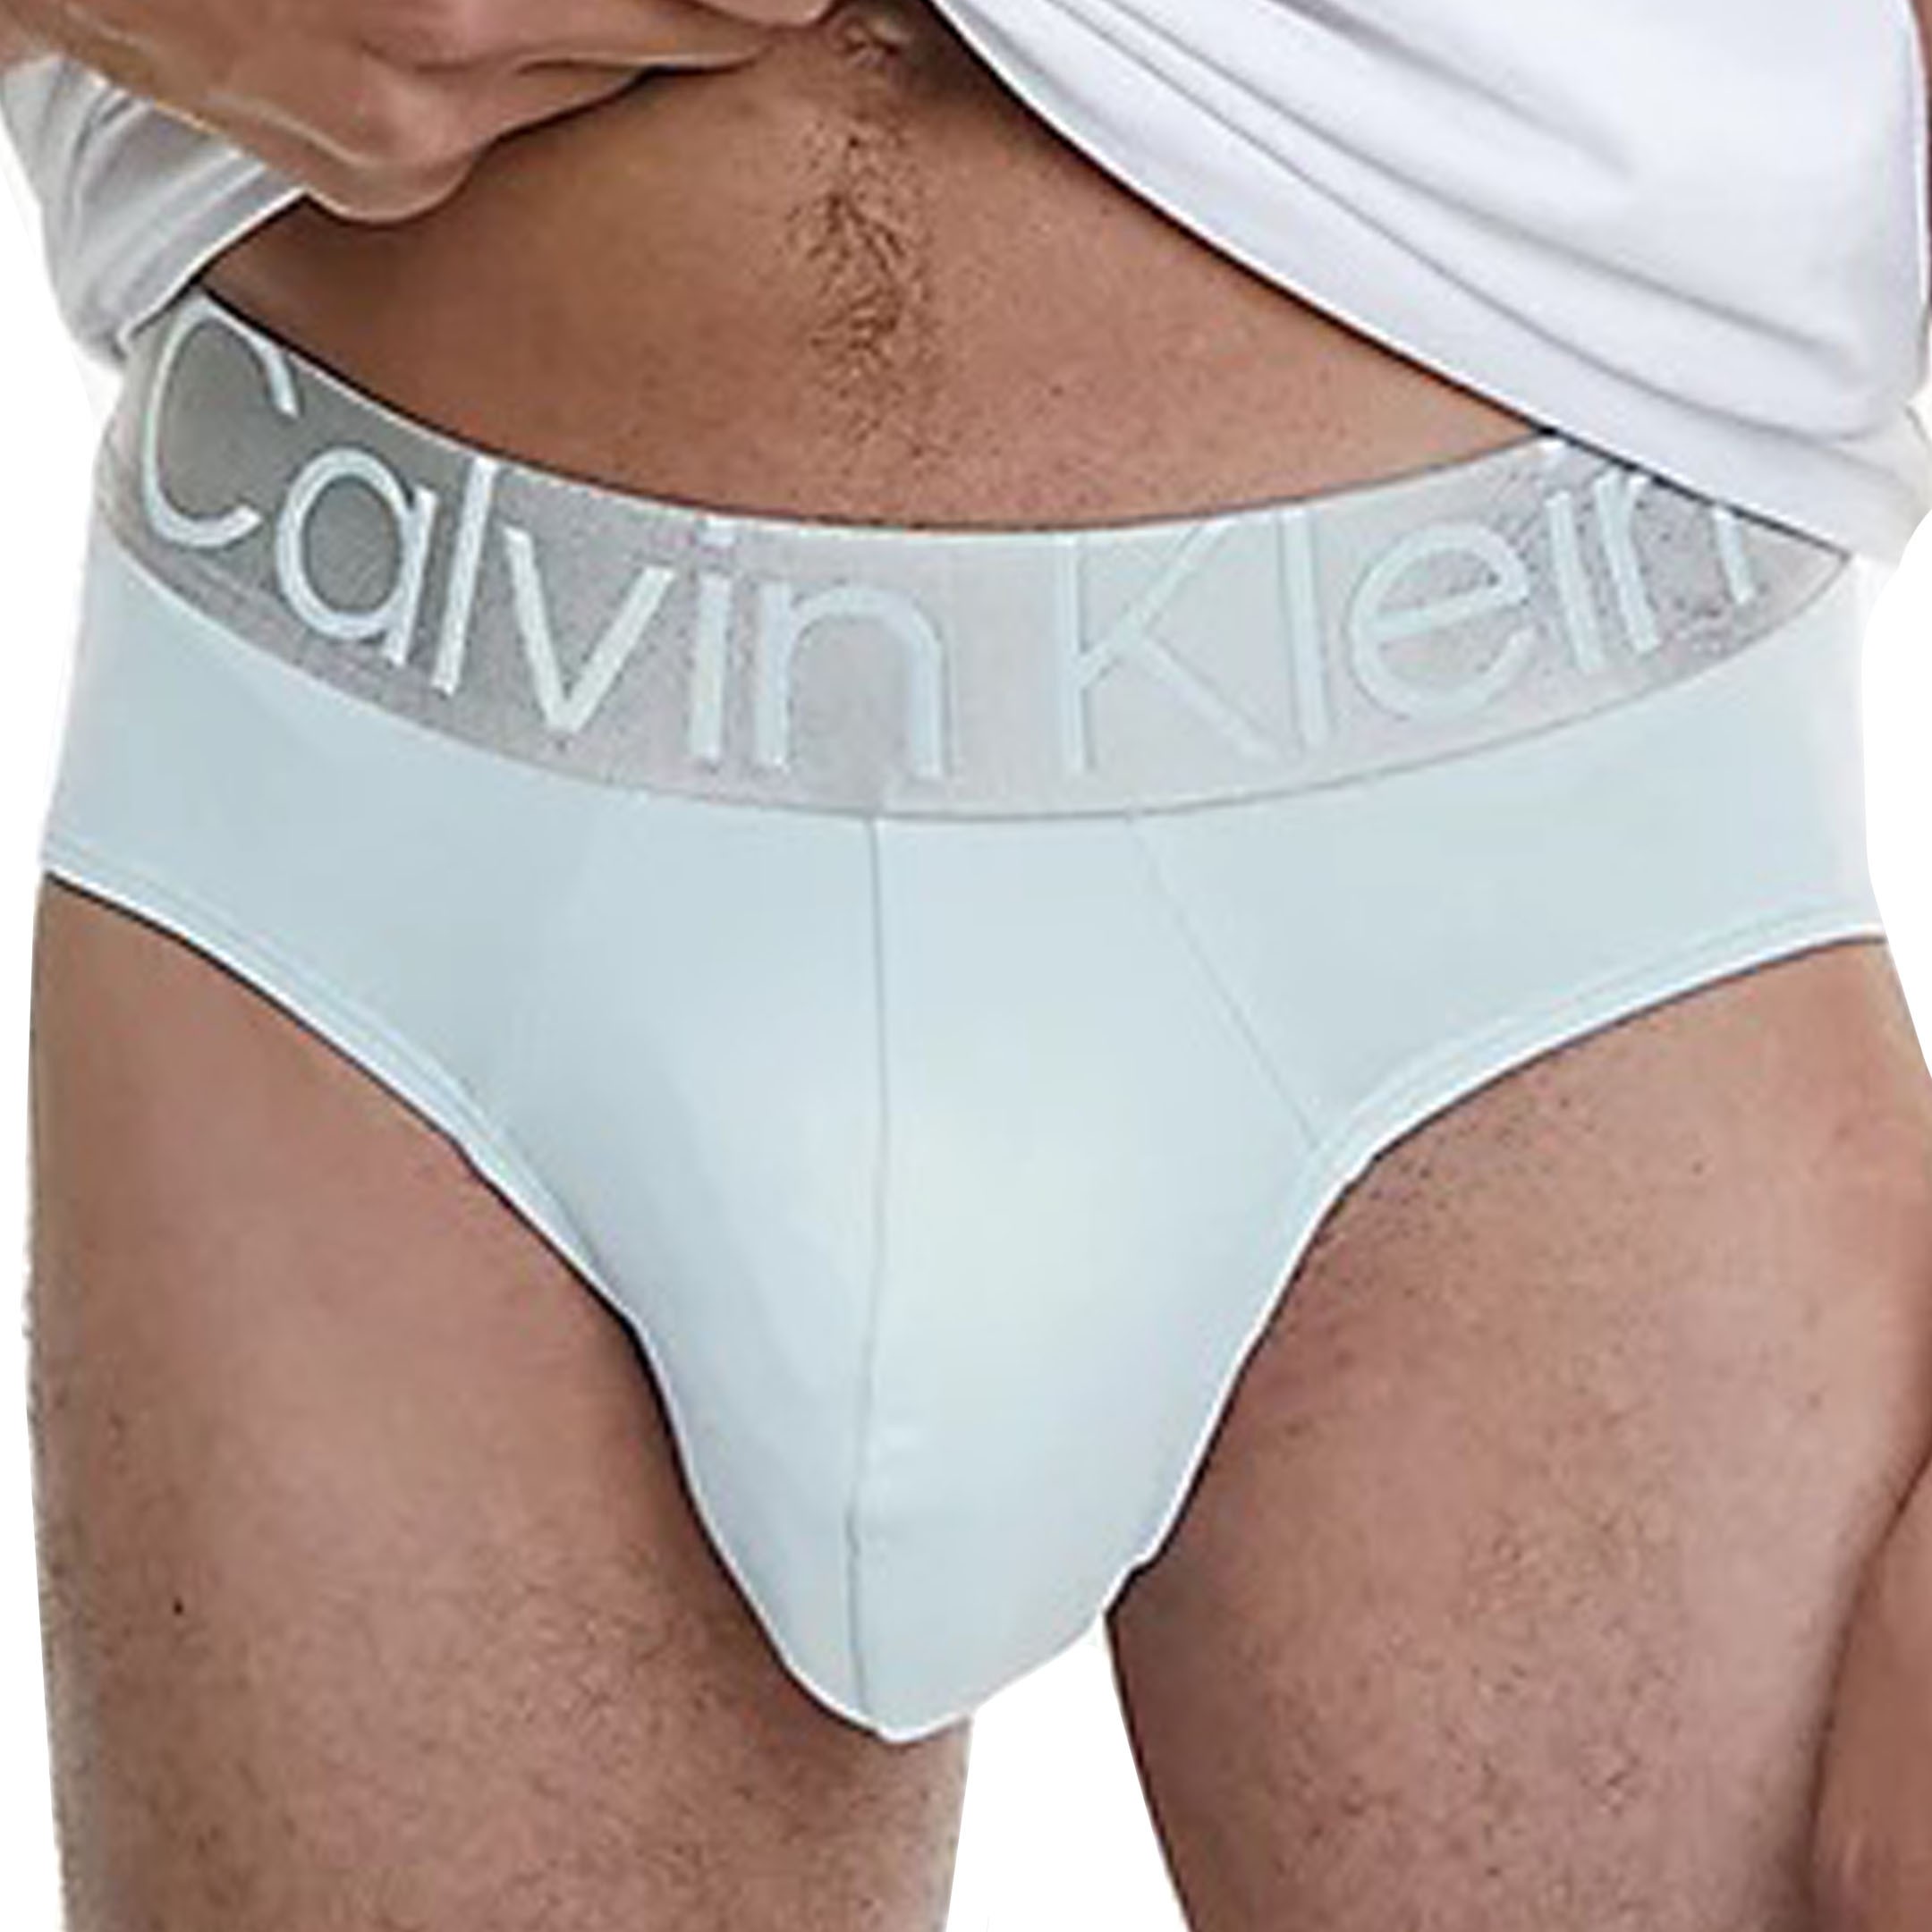 Calvin Klein Mens Steel Micro Hip Underwear Briefs